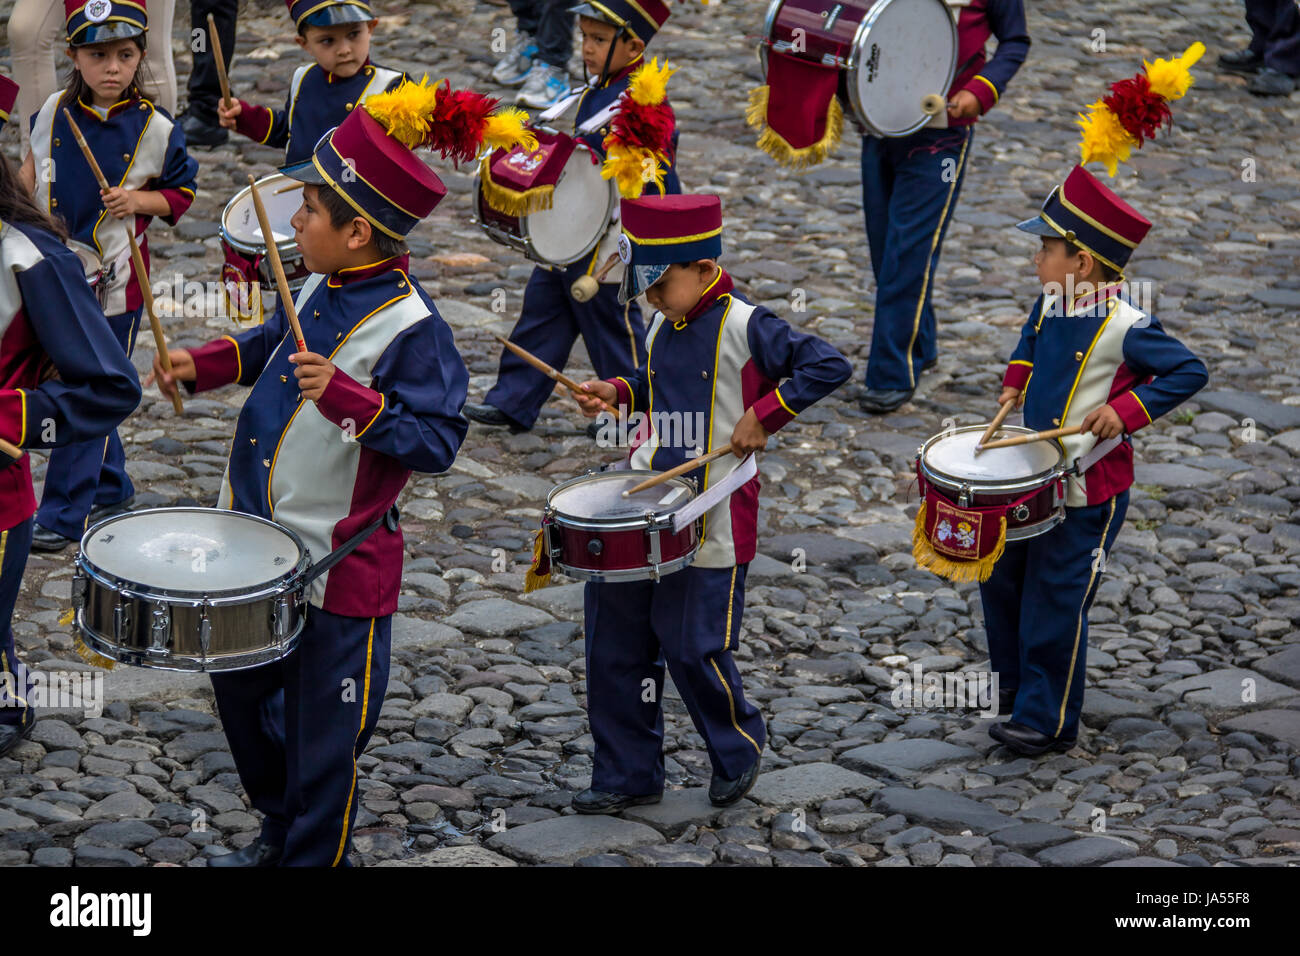 Gruppe von Kleinkindern Marching Band in Uniformen - Antigua, Guatemala Stockfoto